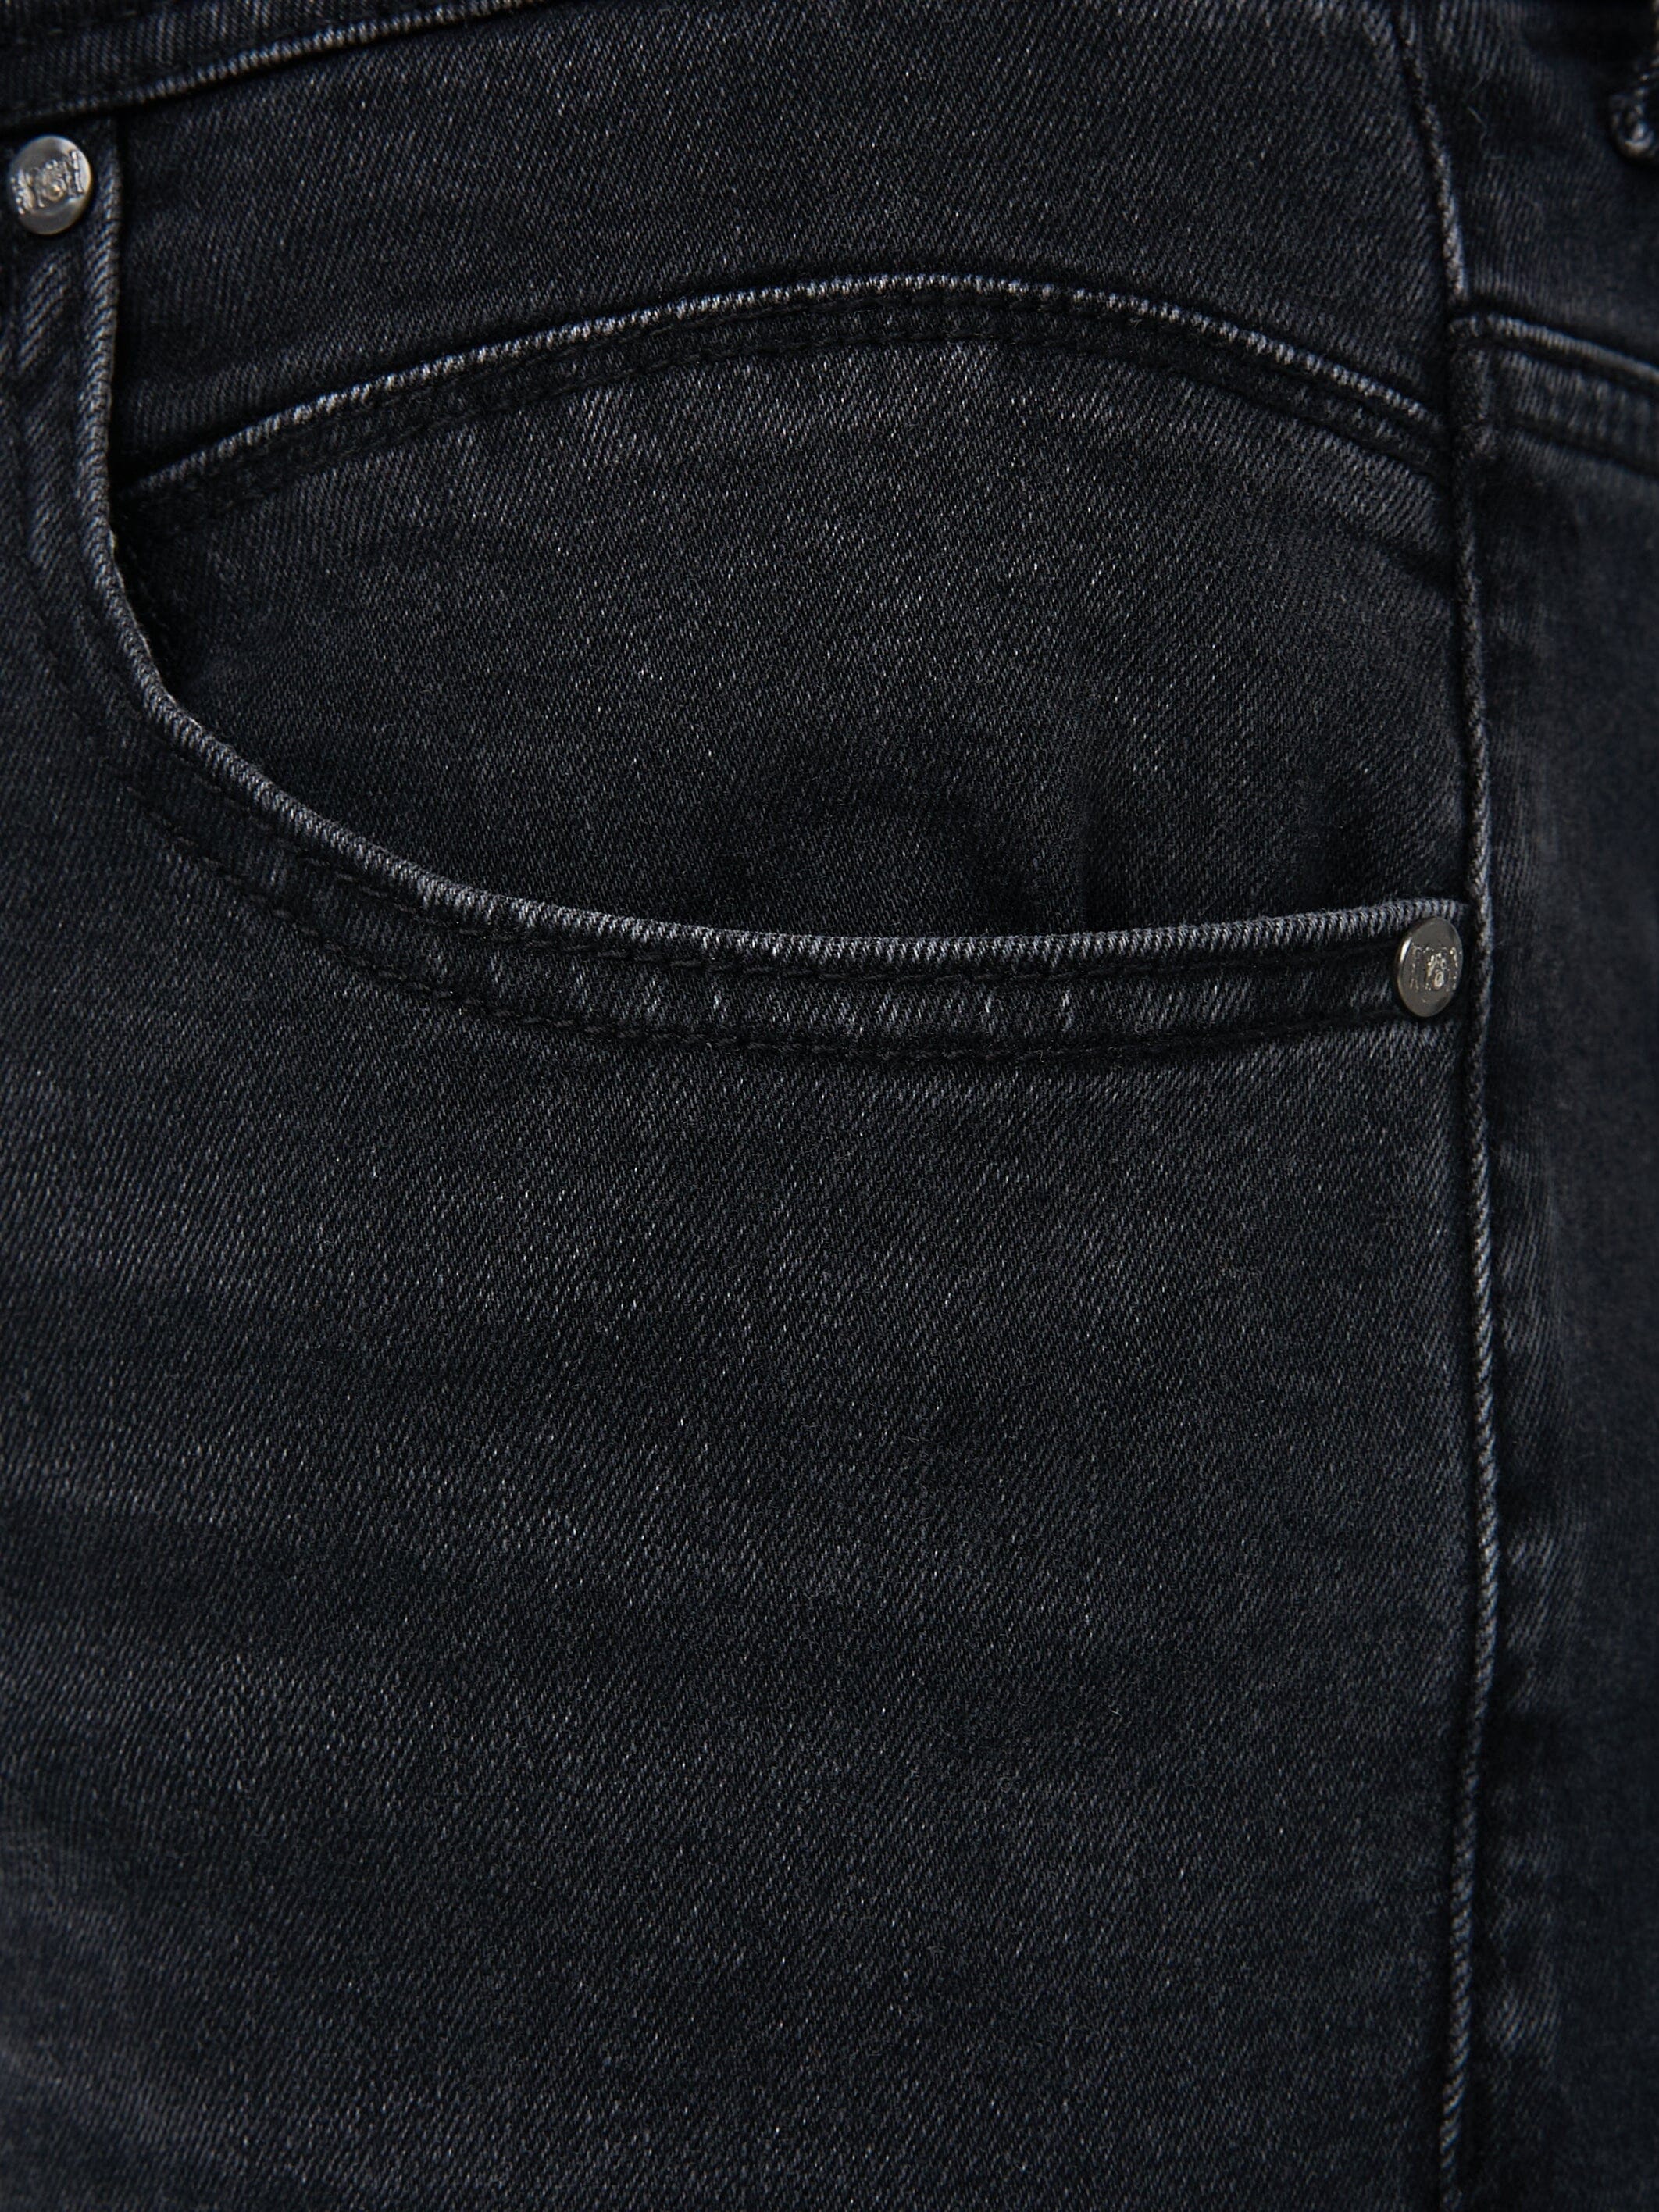 Osmium Denim Jeans Black Wash